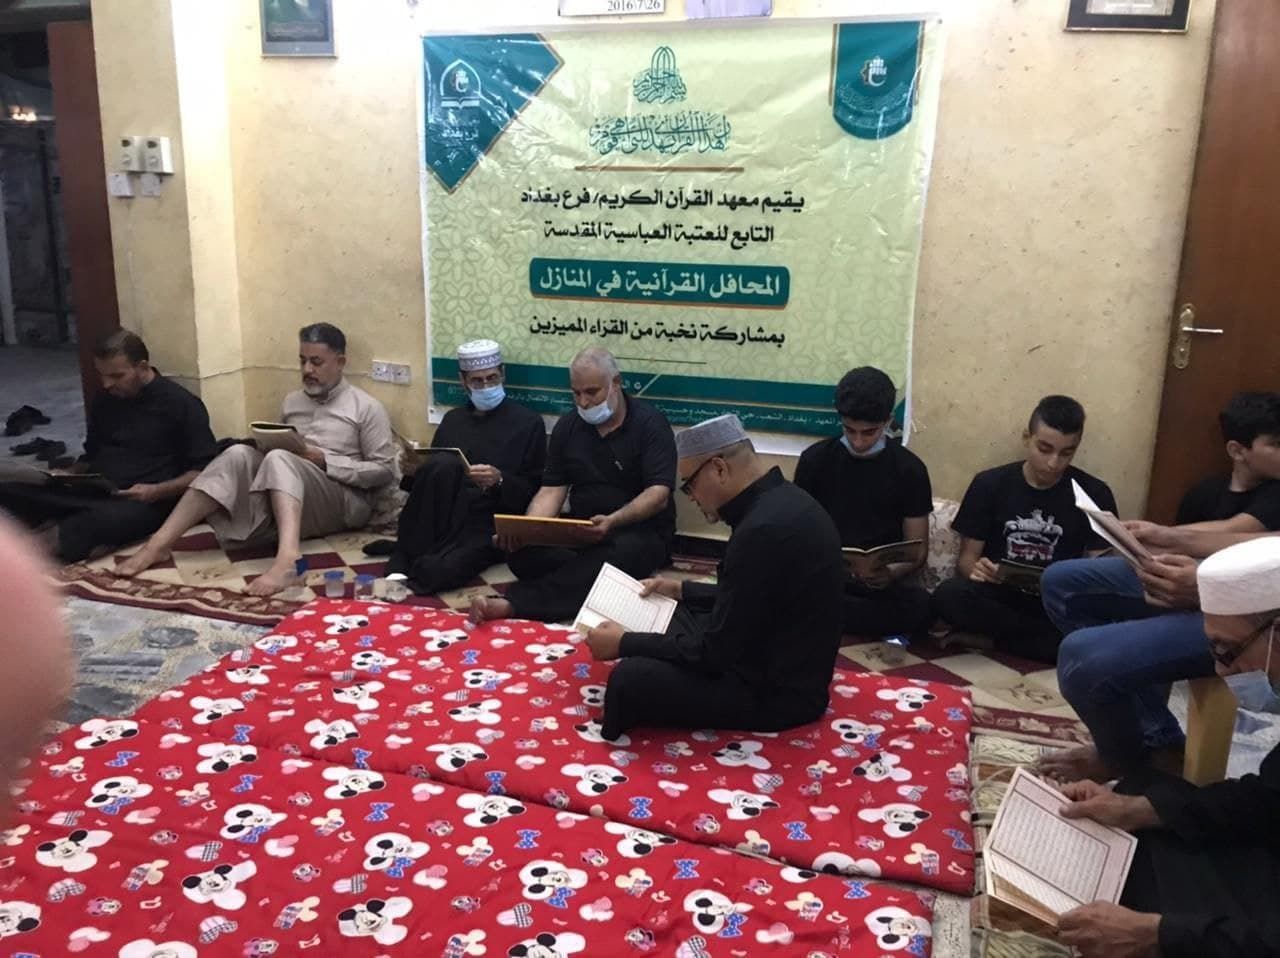 فرع المعهد في بغداد يُقيم مجلسًا قرآنيًا على روح المرجع الحكيم (قدس سرّه)